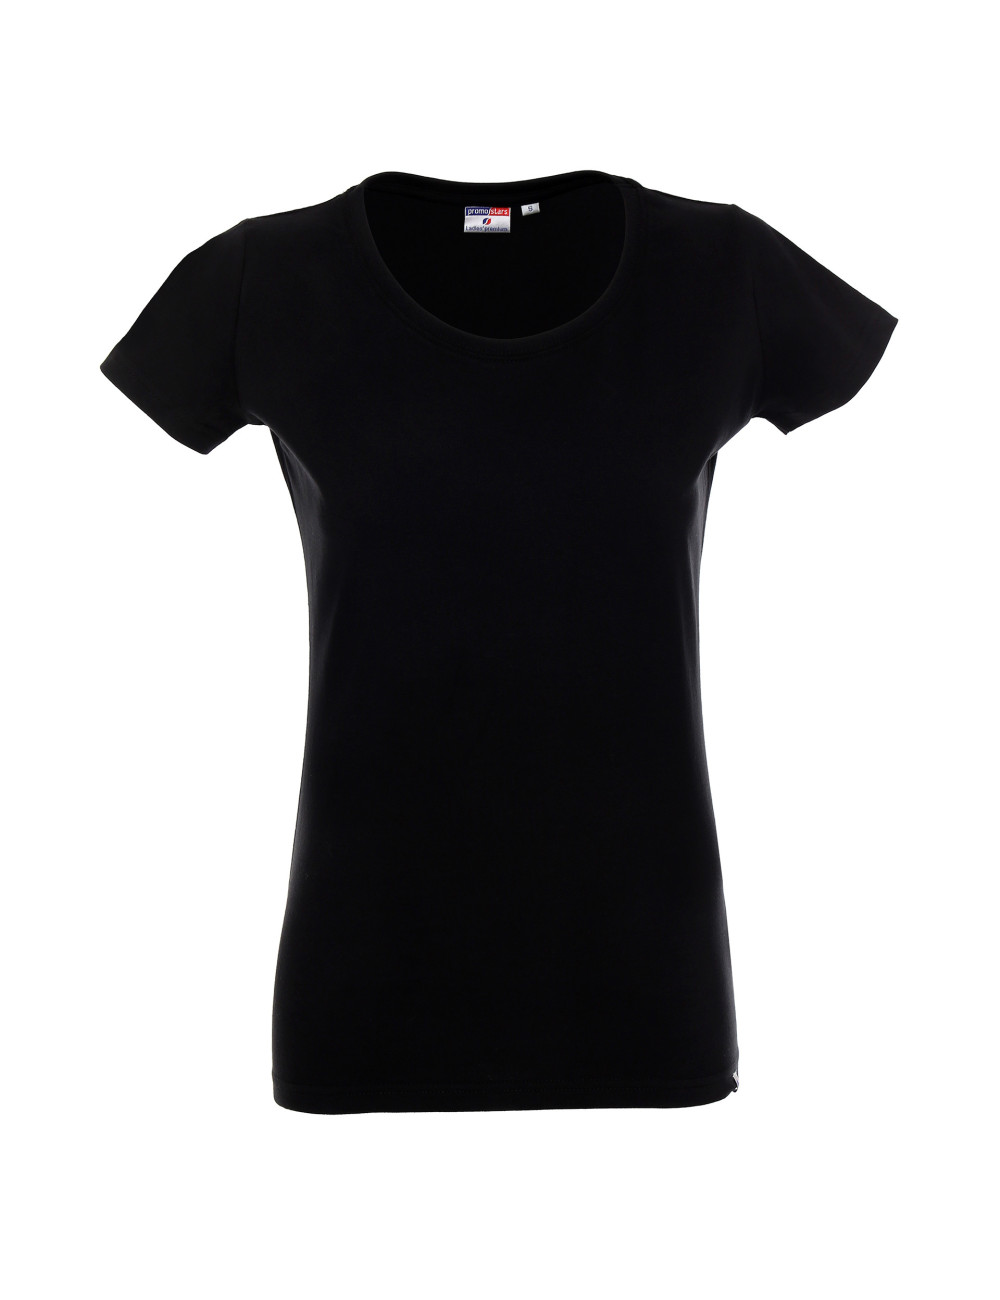 Ladies` premium women`s t-shirt black Promostars